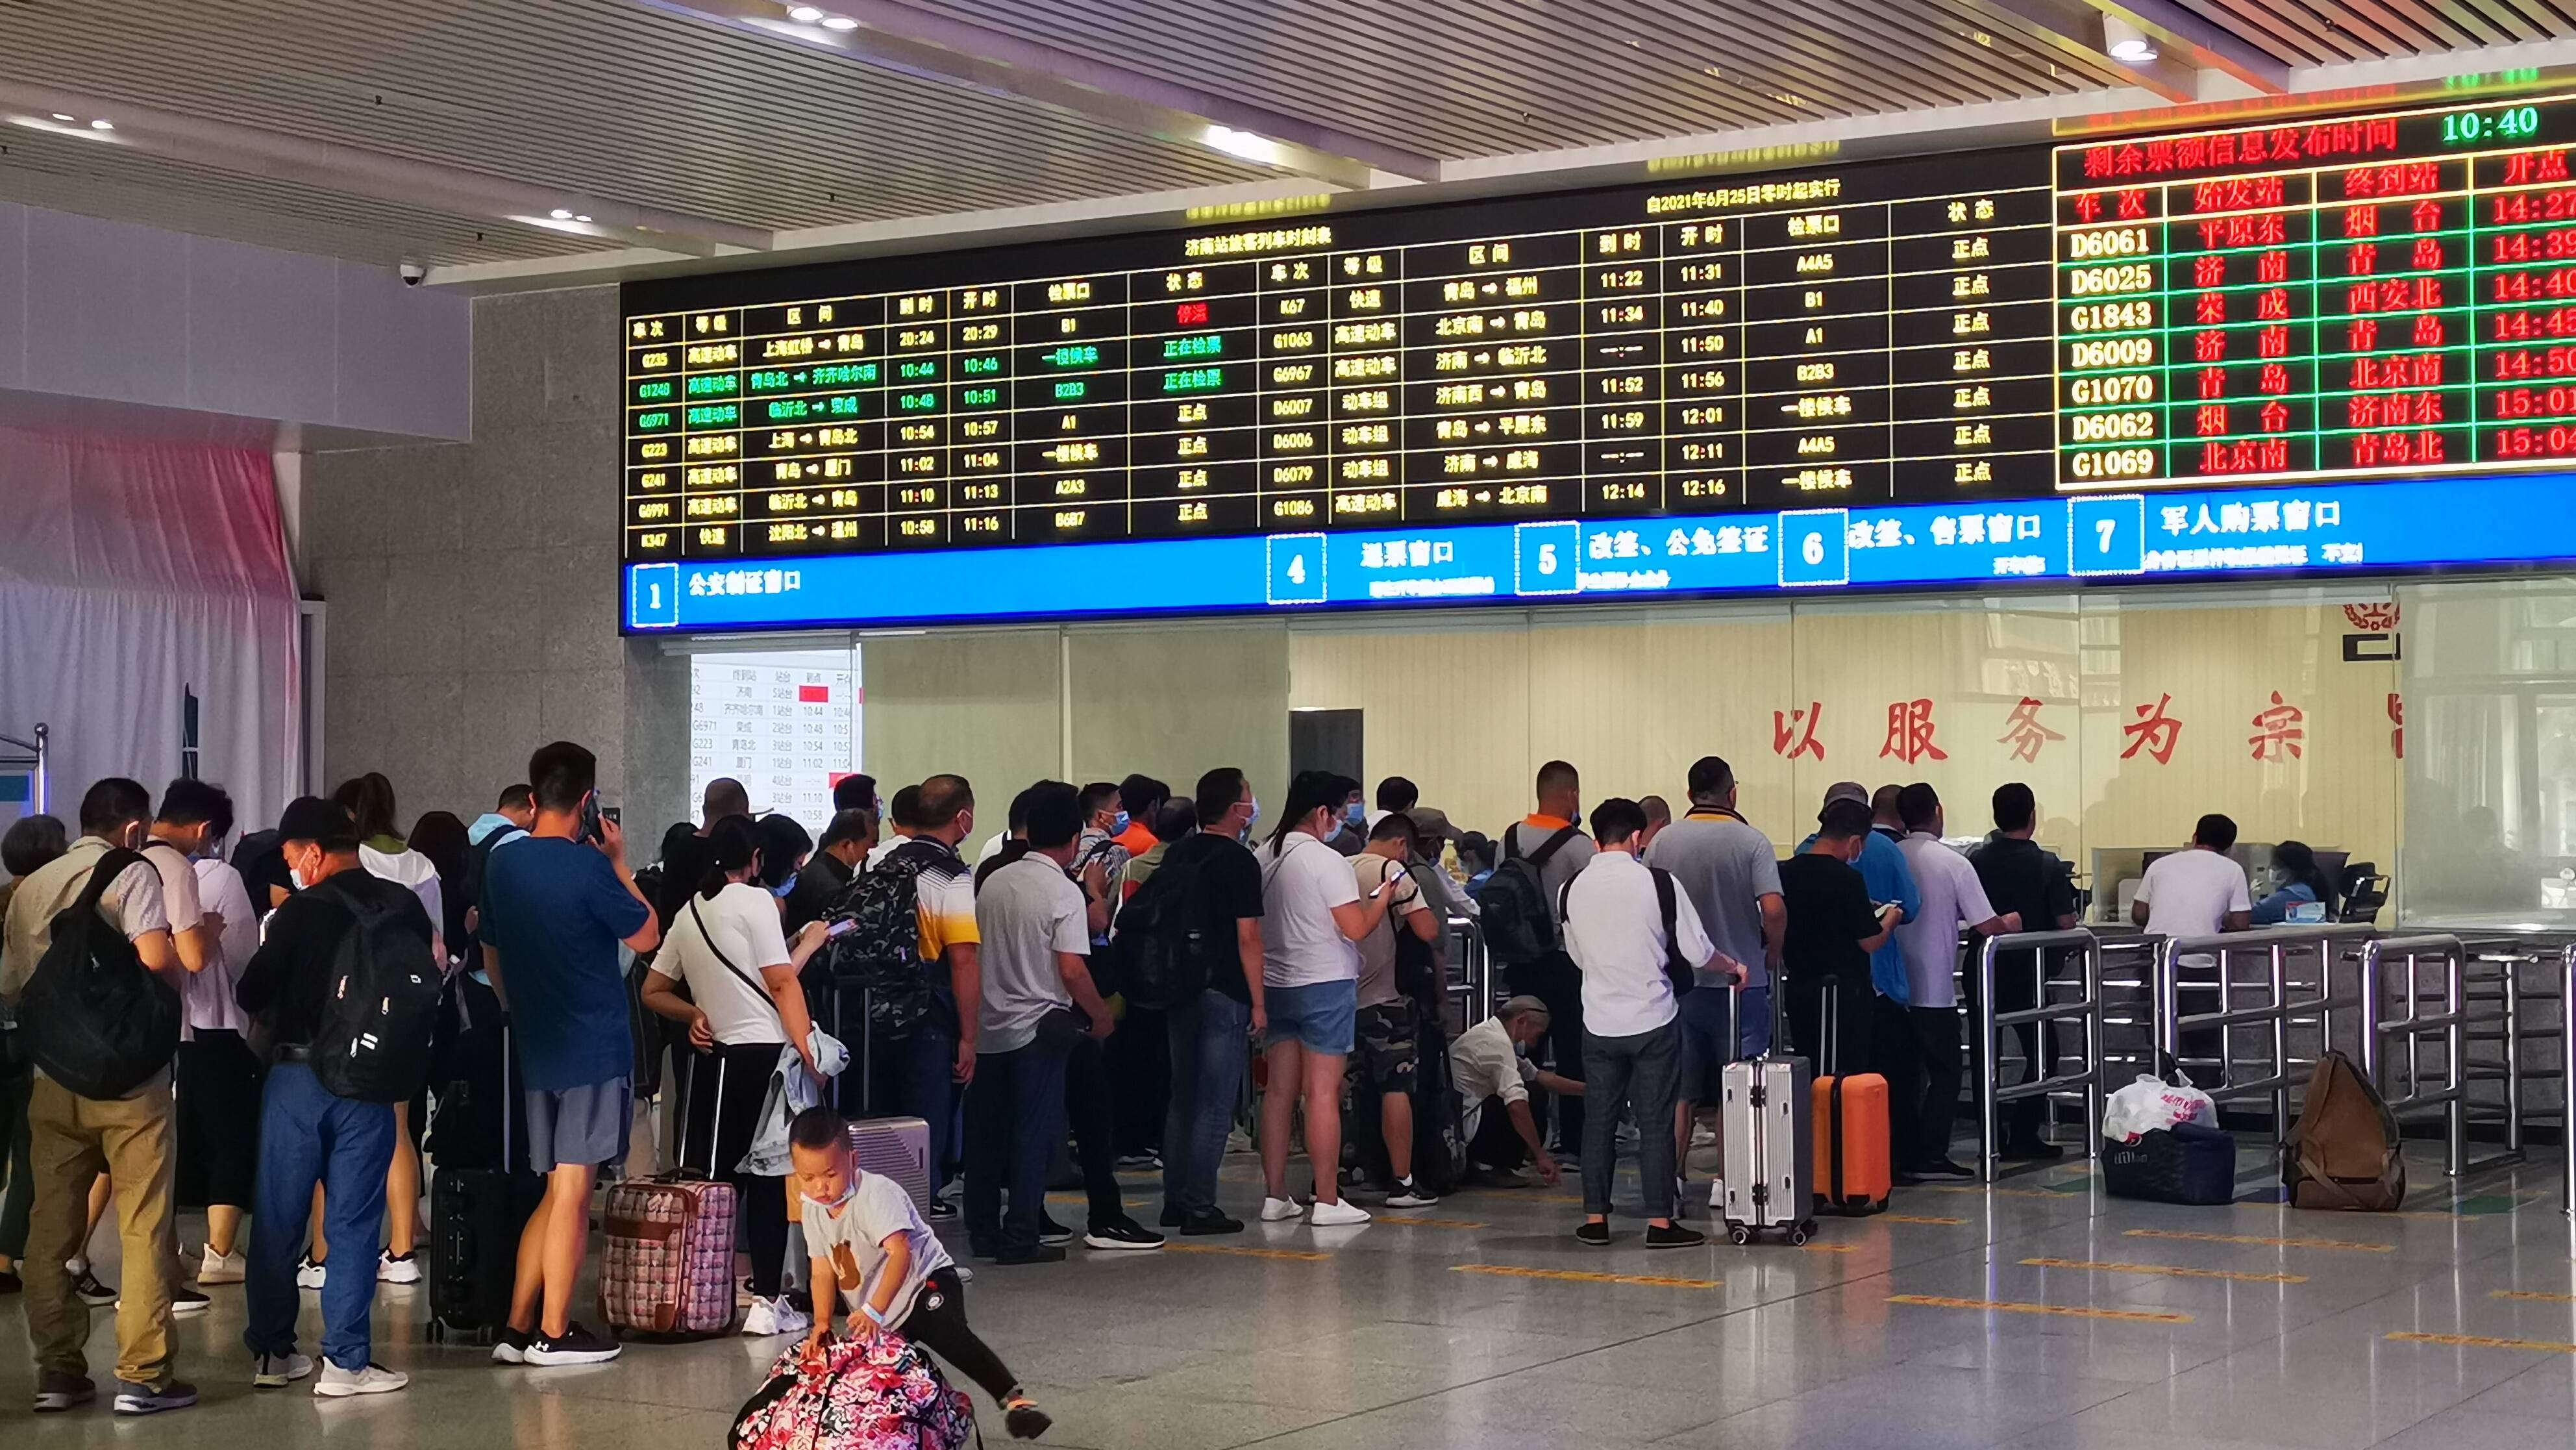 线路优化增加晚间列车 国铁济南局实行新列车运行图